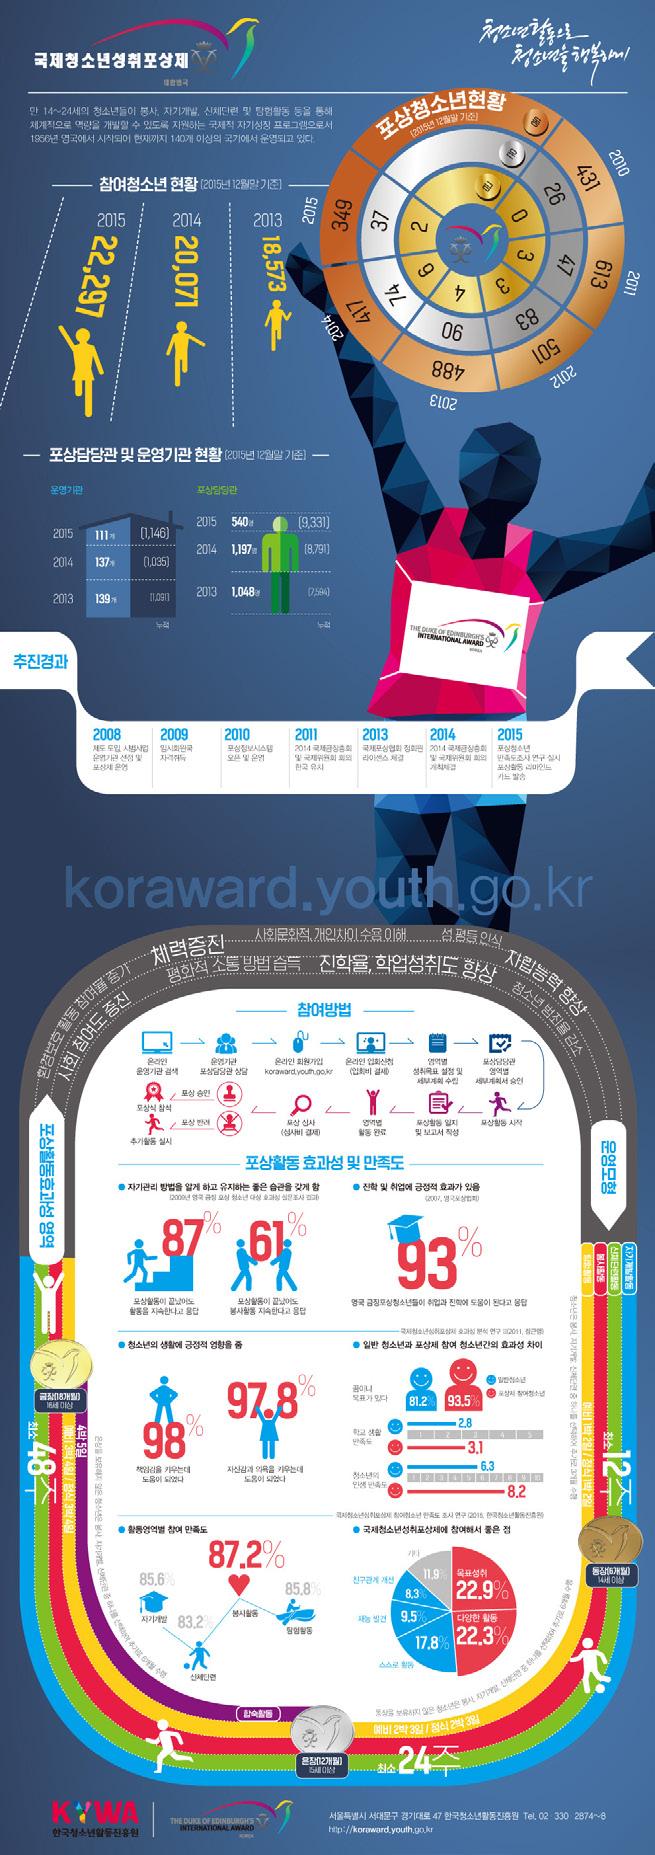 표준 디자인 그리드시스템 40 온라인용 인포그래픽 01 국제청소년성취포상제의 활동을 목표를 설정하여